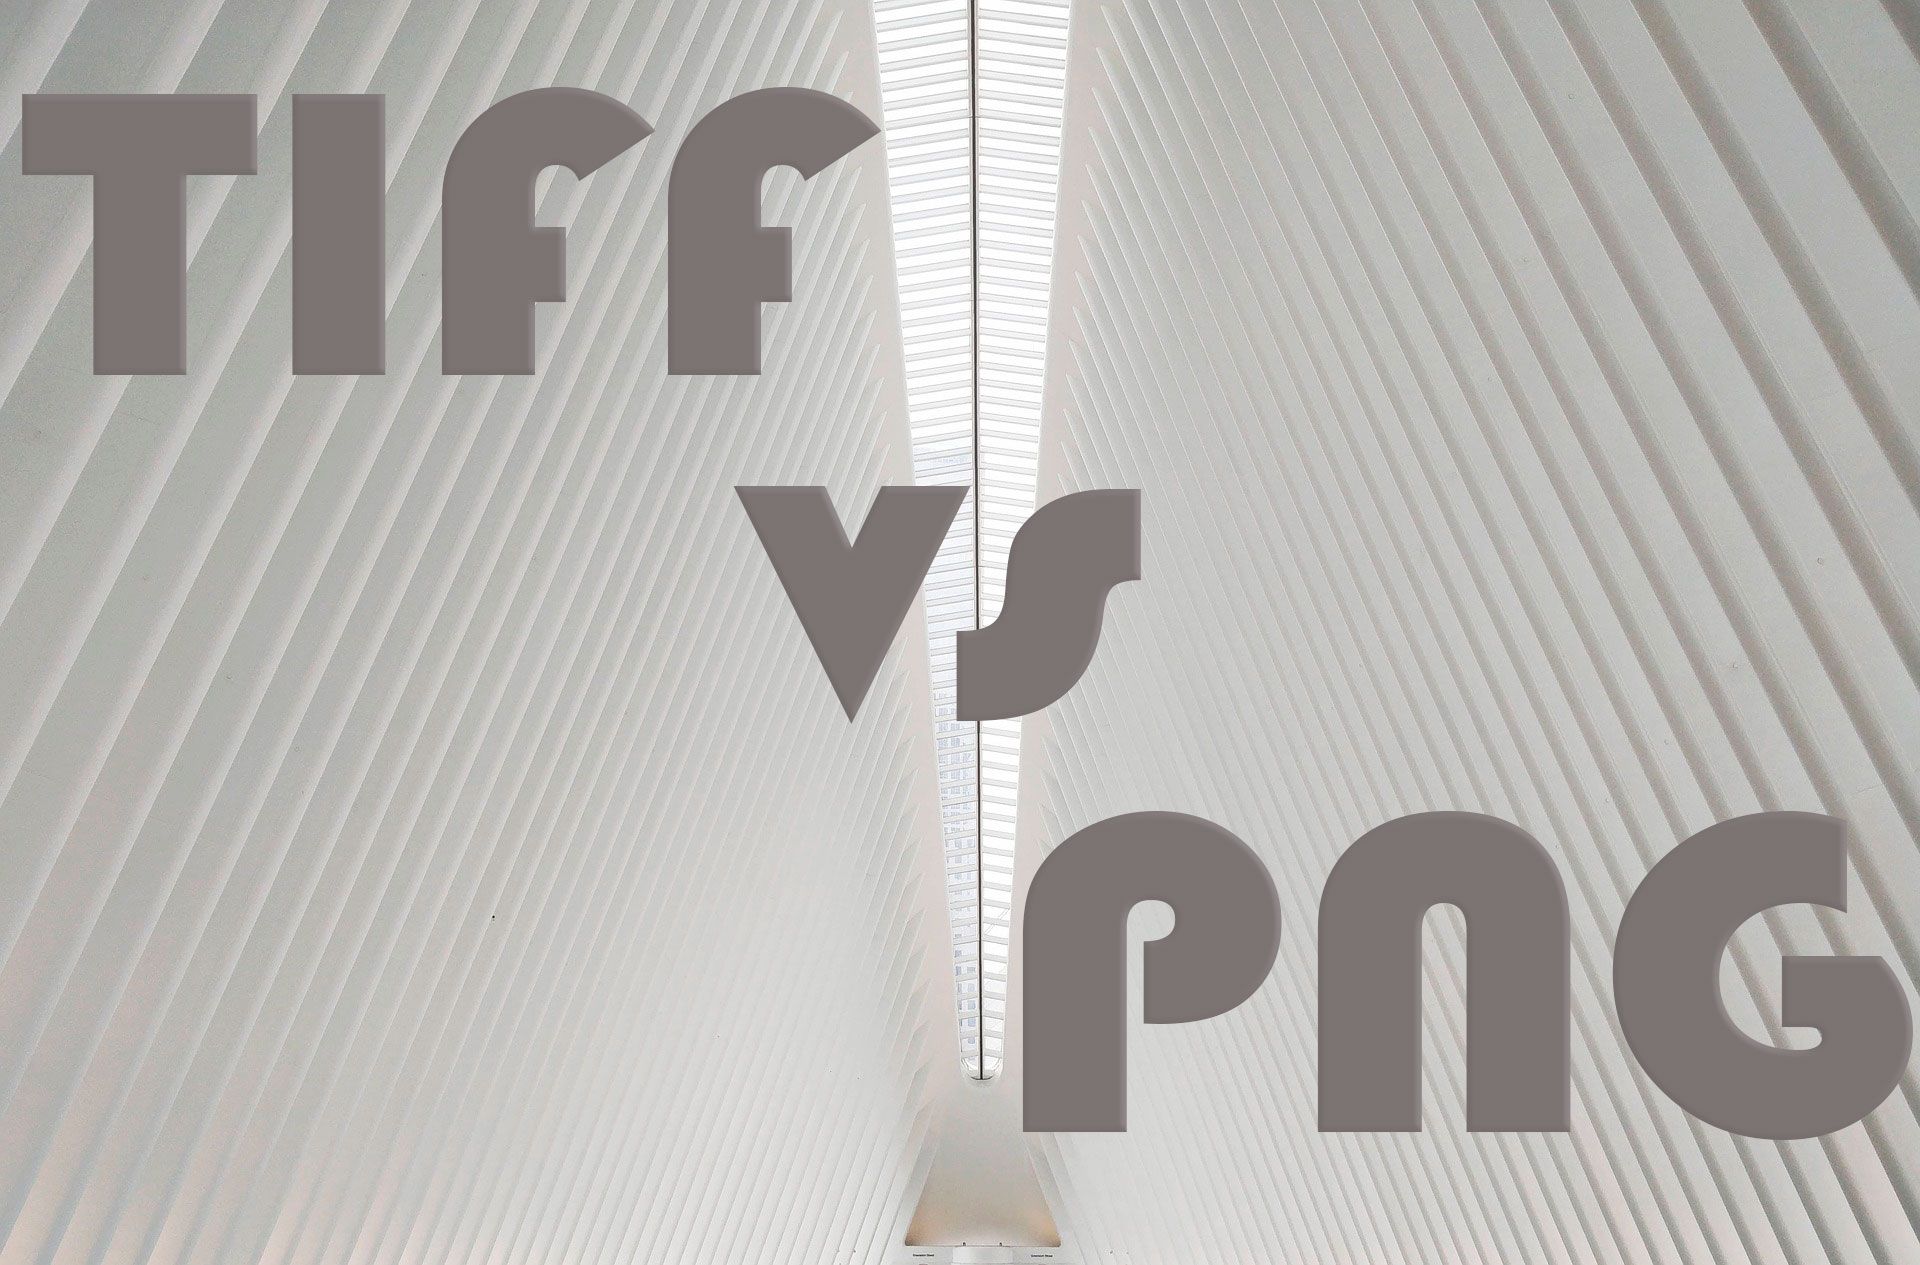 TIFF vs. PNG..